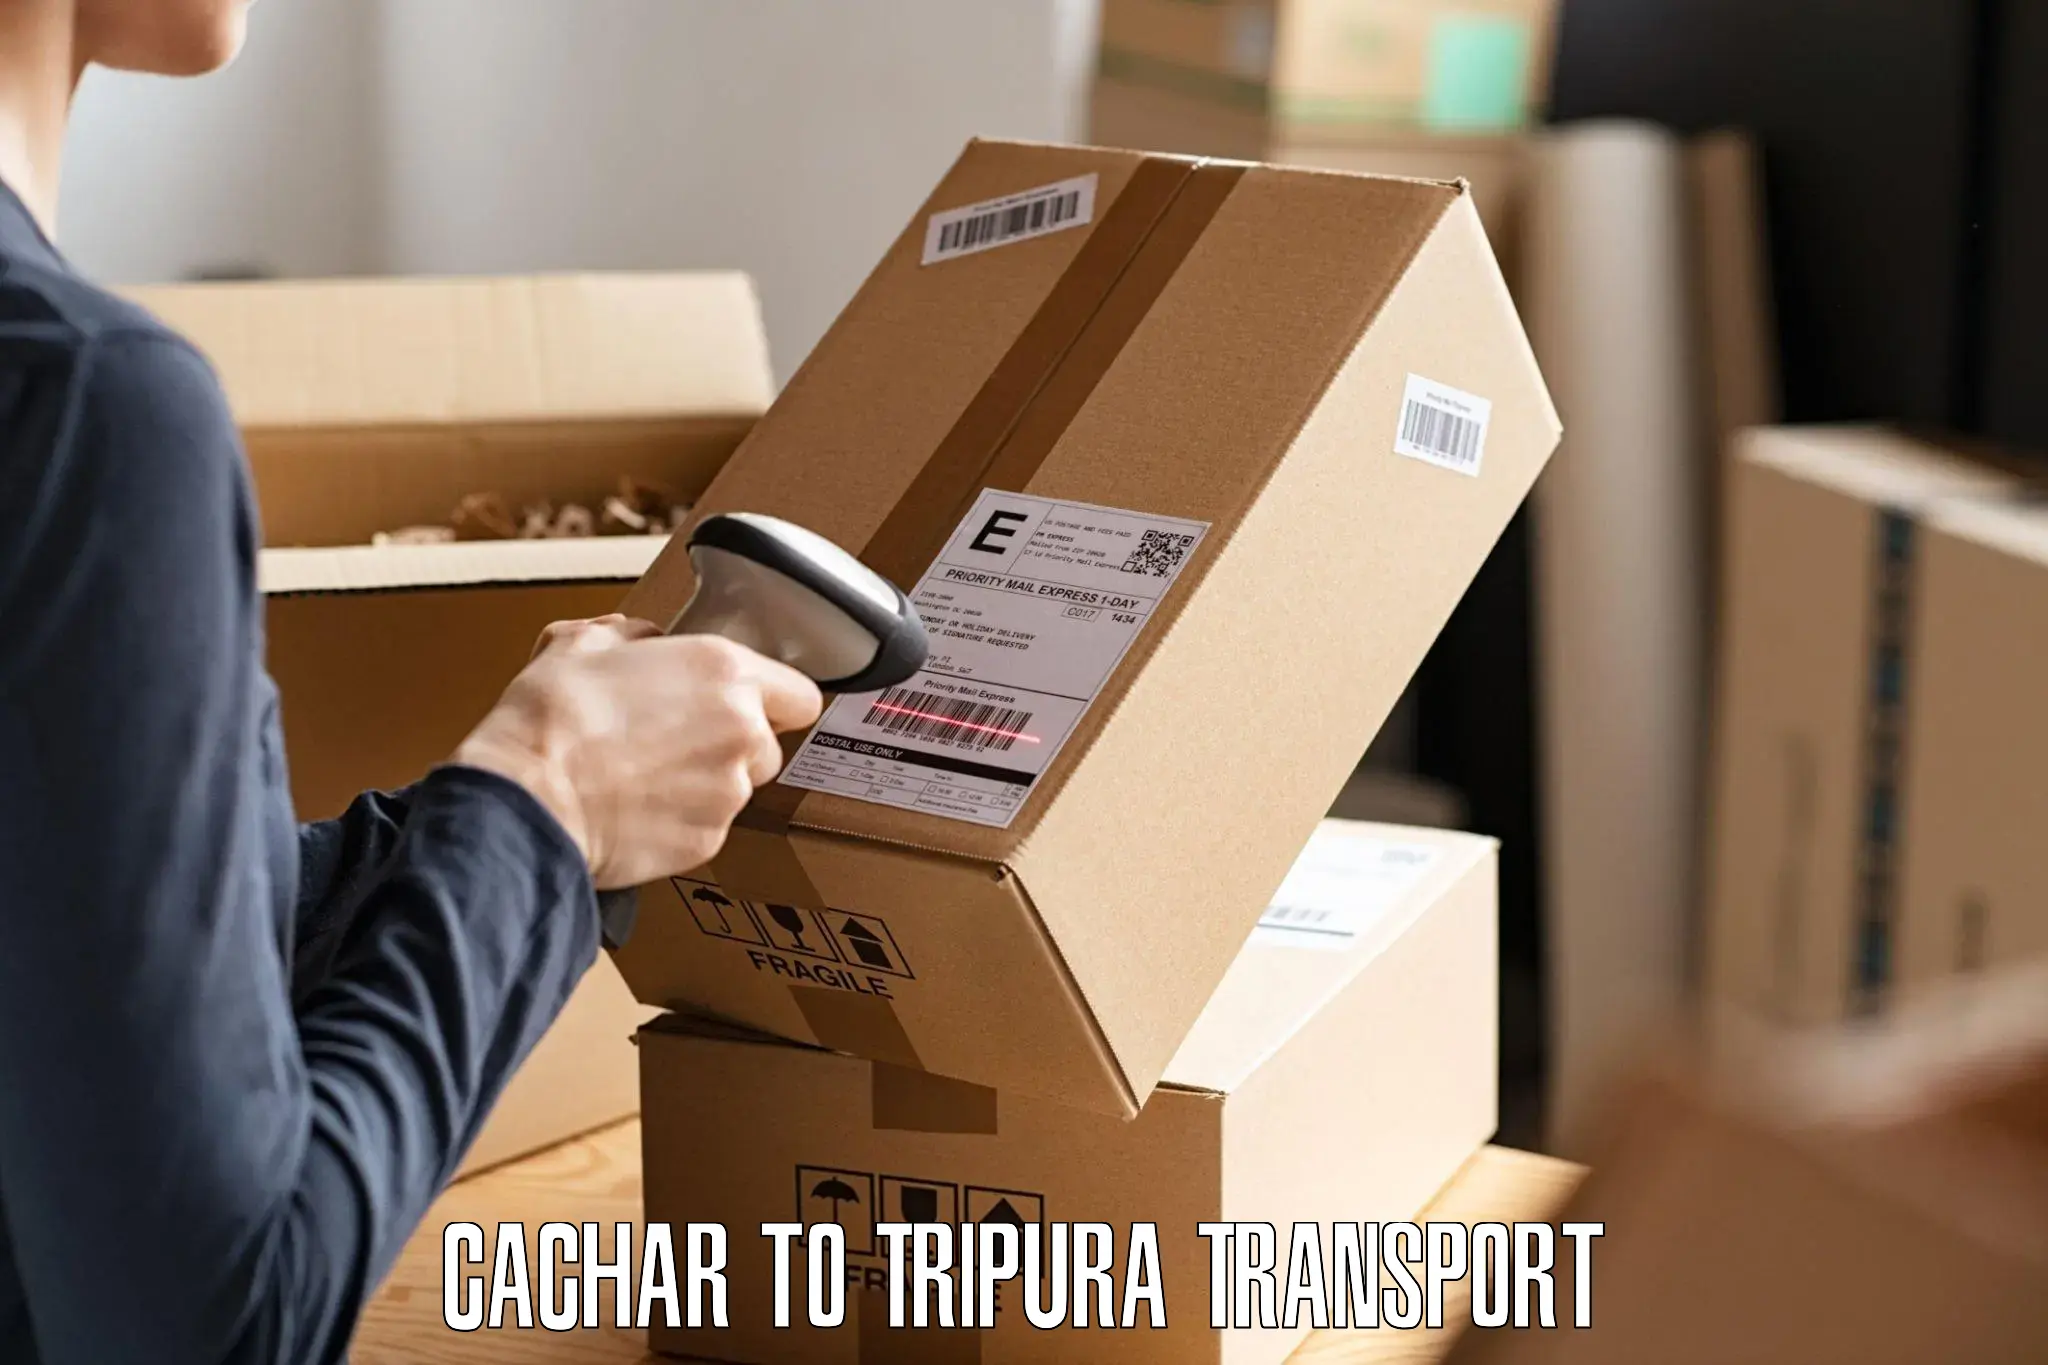 Shipping services Cachar to Agartala